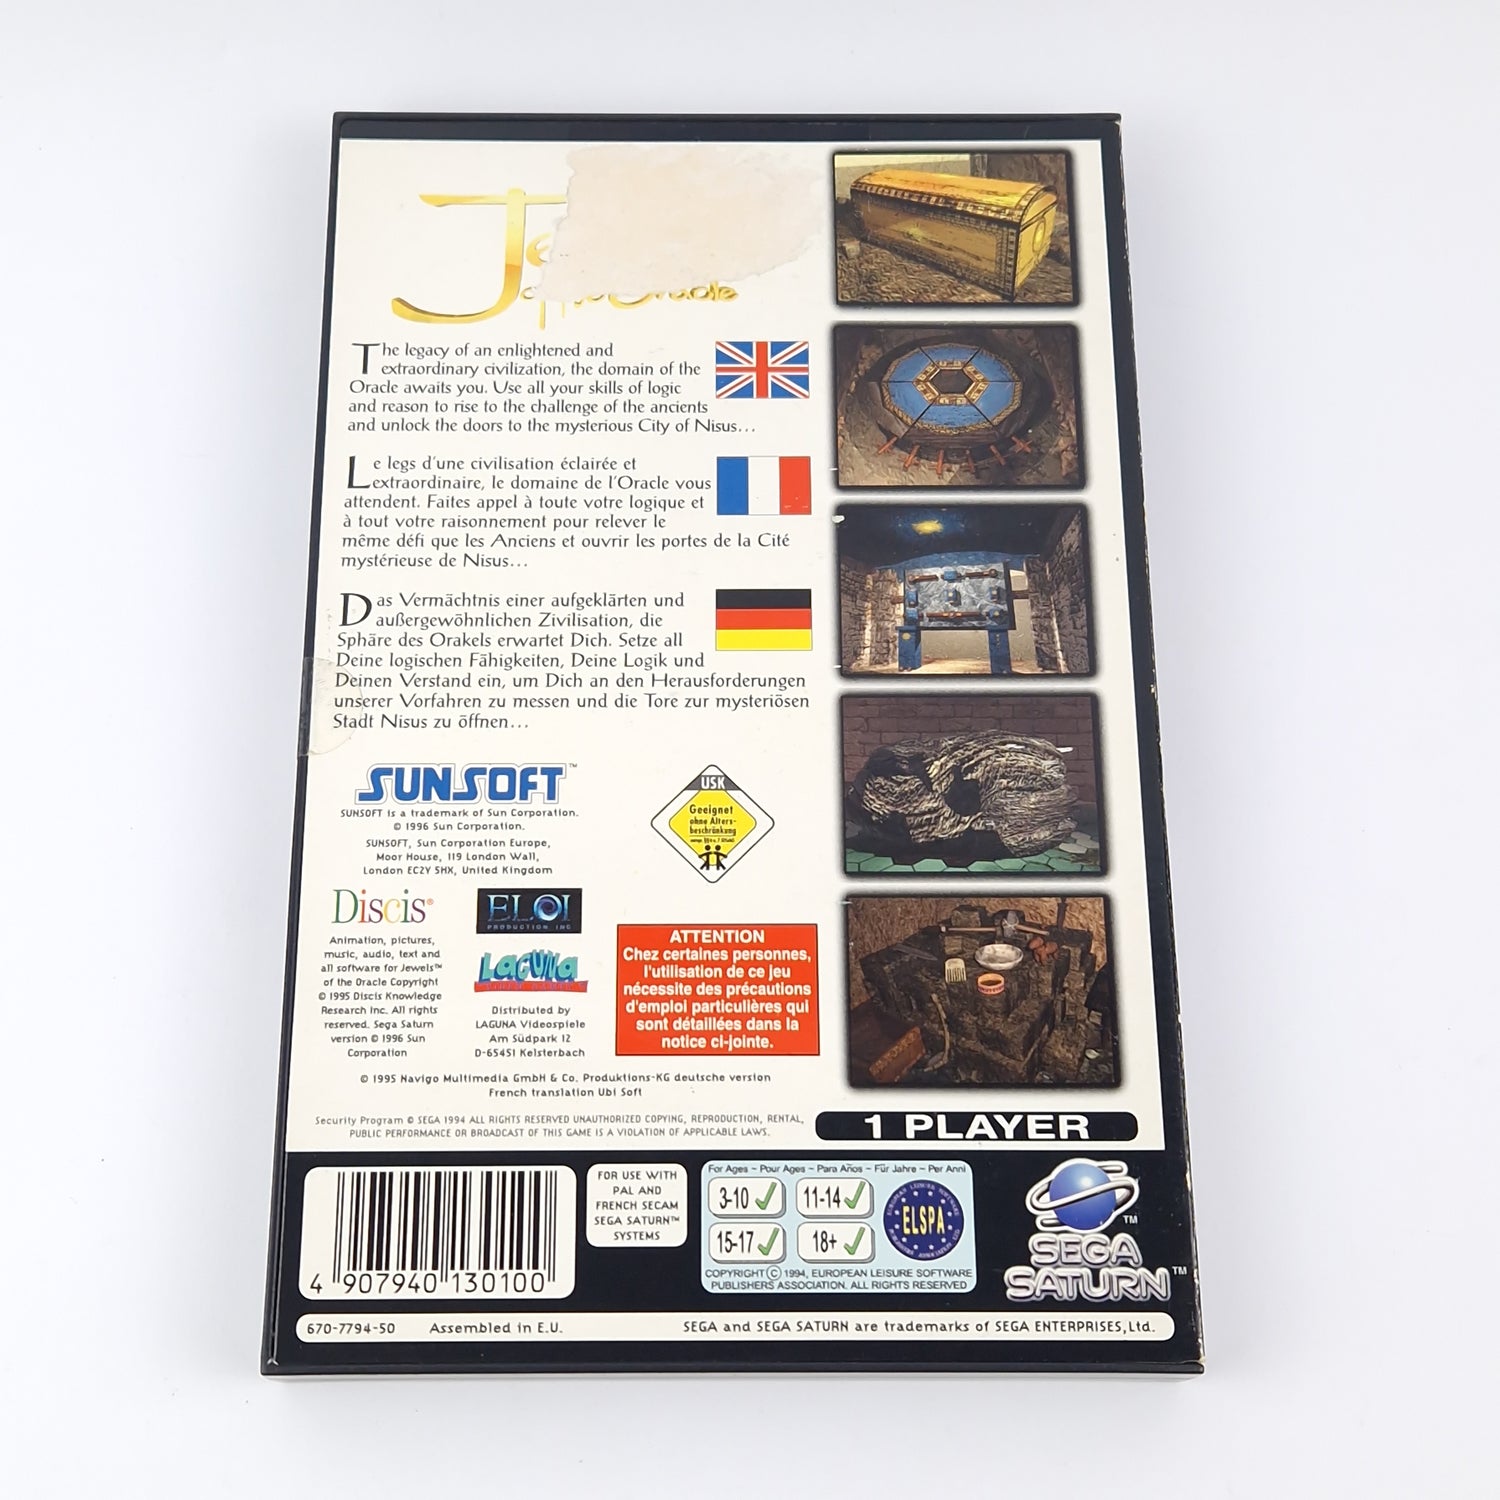 Sega Saturn Spiel : Jewels of the Oracle - OVP Anleitung PAL | CD Disk